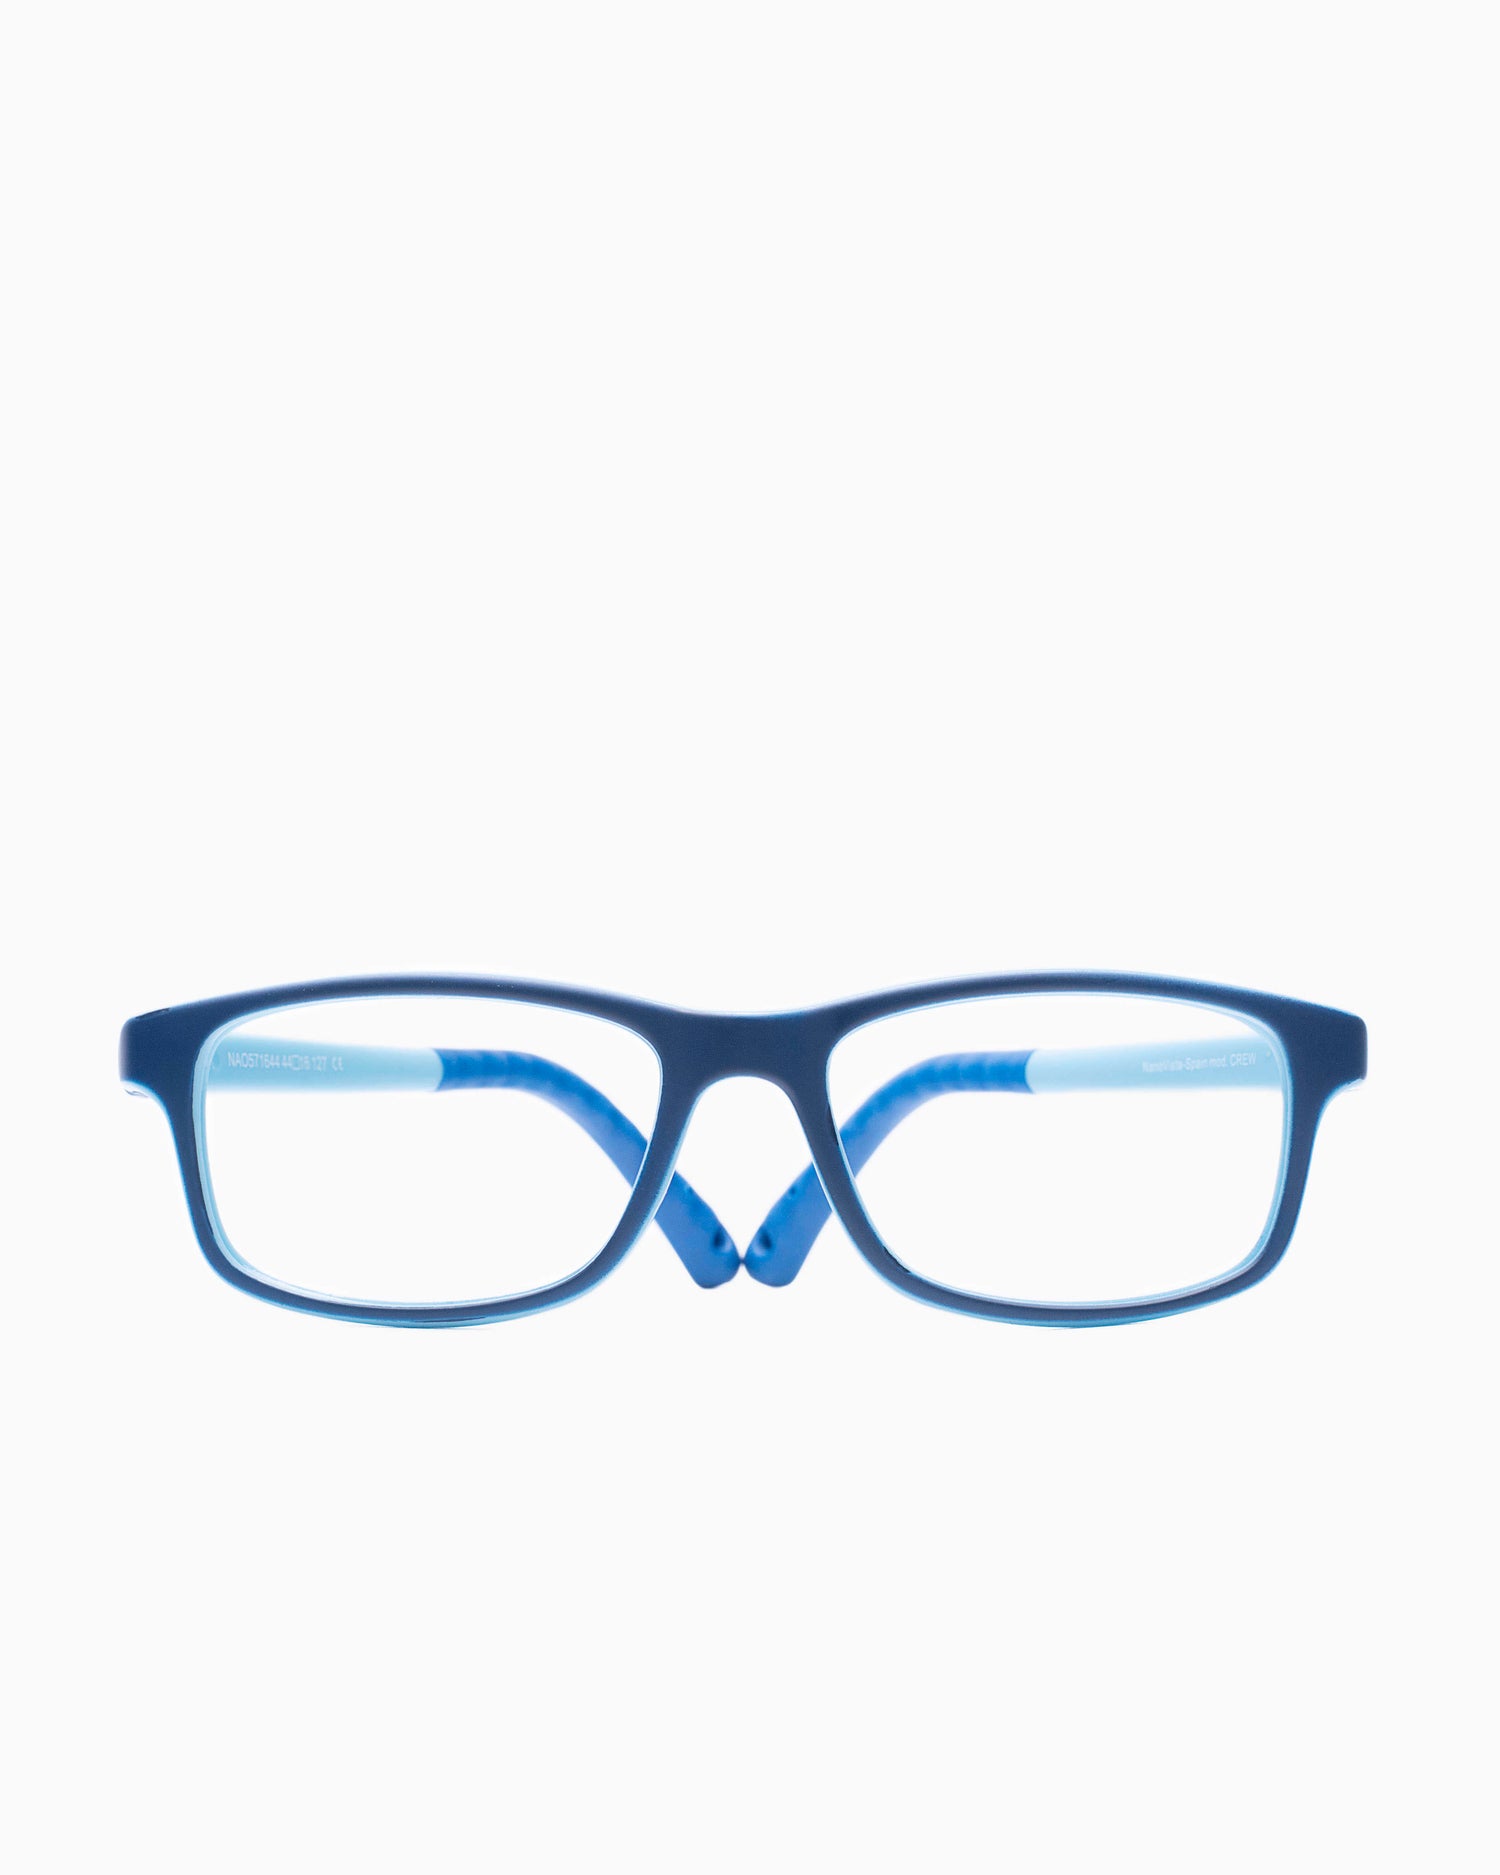 Nanovista Kids - CREW - BLUEBLUE | Bar à lunettes:  Marie-Sophie Dion